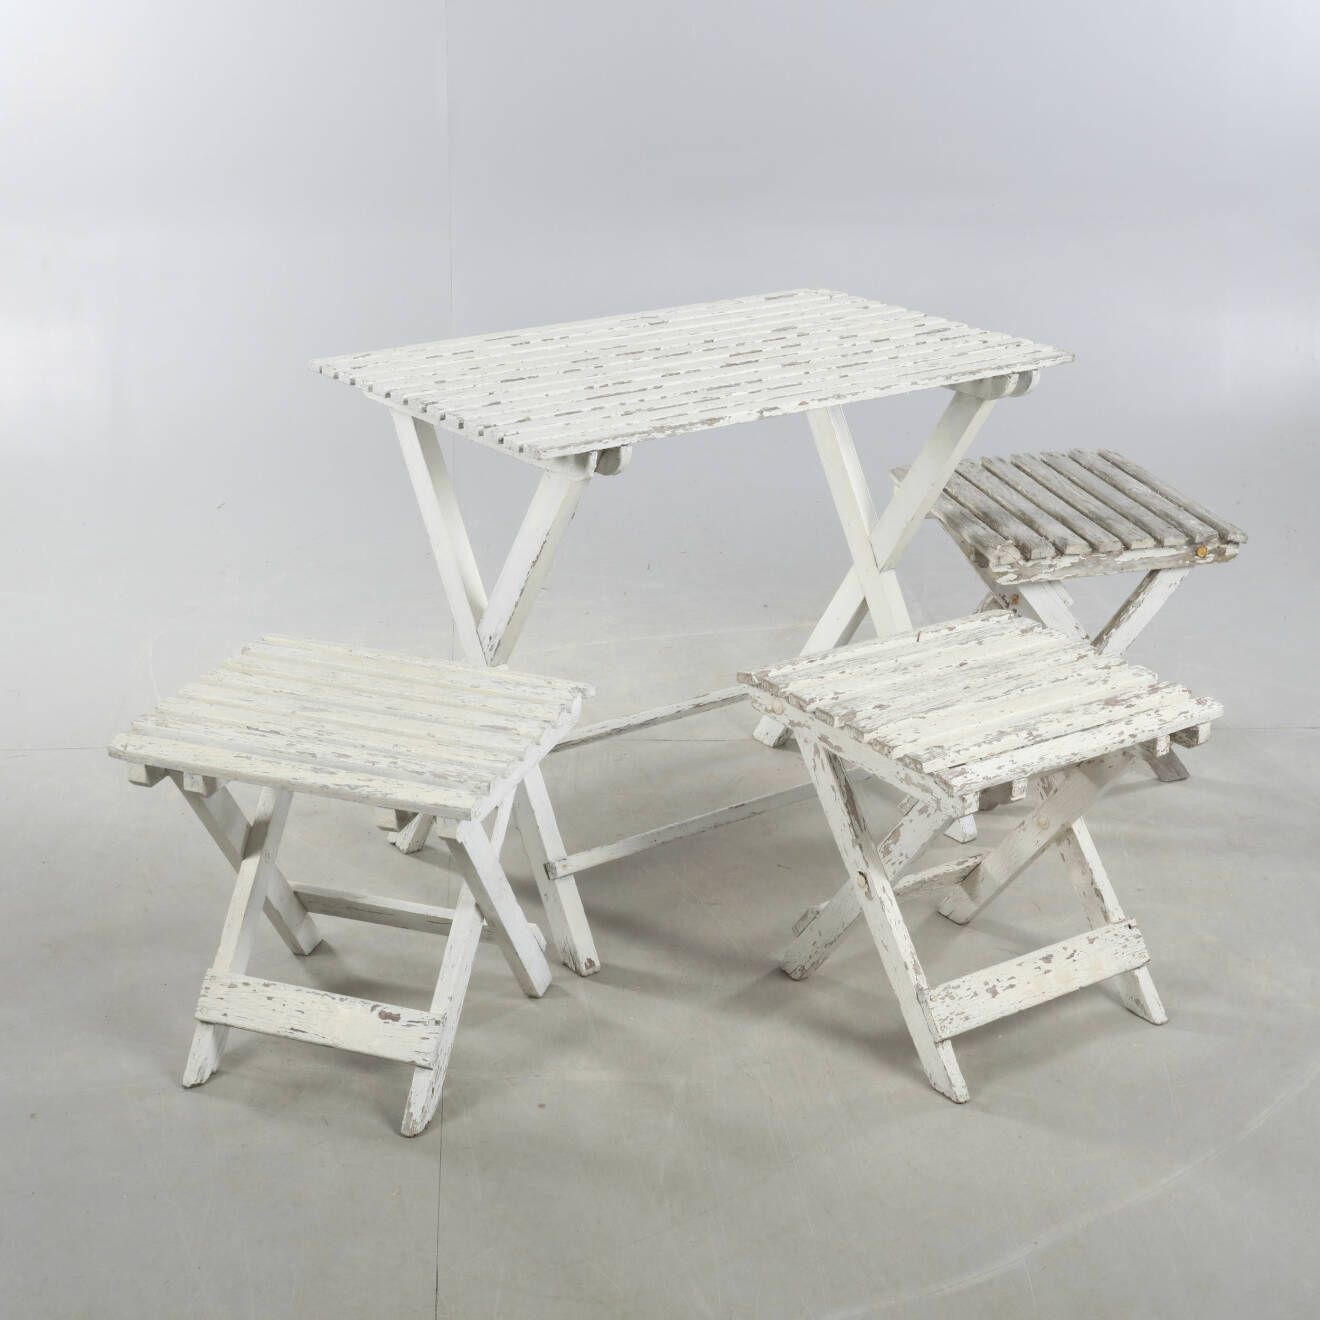 Bord och tre stolar utan ryggstöd i slitet vitt trä.